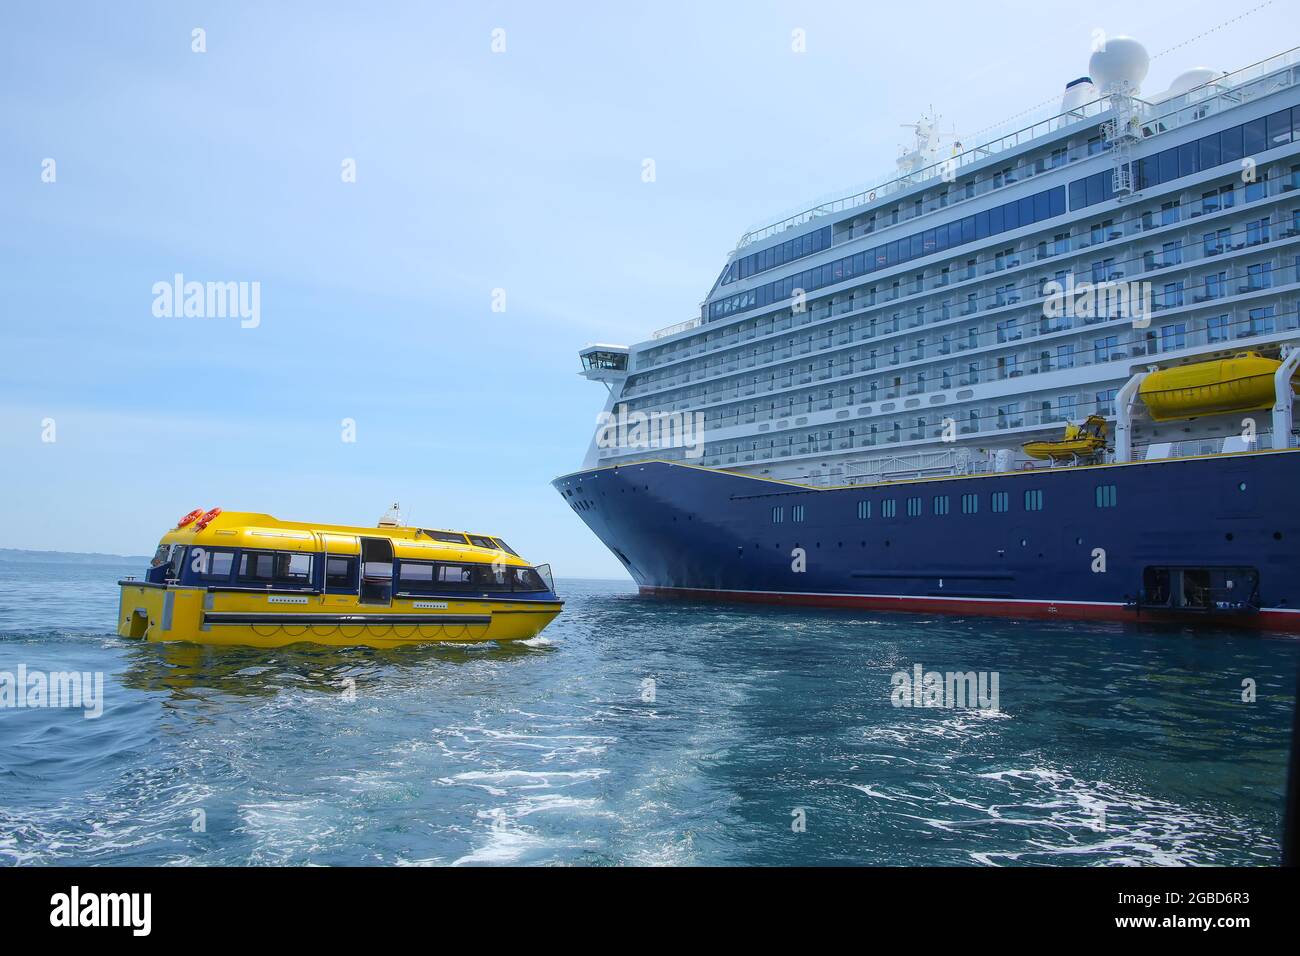 Schiff vor Anker im St. Peter Port, Guernsey. Großes Schiff mit blauem Rumpf und einem gelben Rettungsboot oder Tender vor der Küste, Kanalinseln, großbritannien. Stockfoto